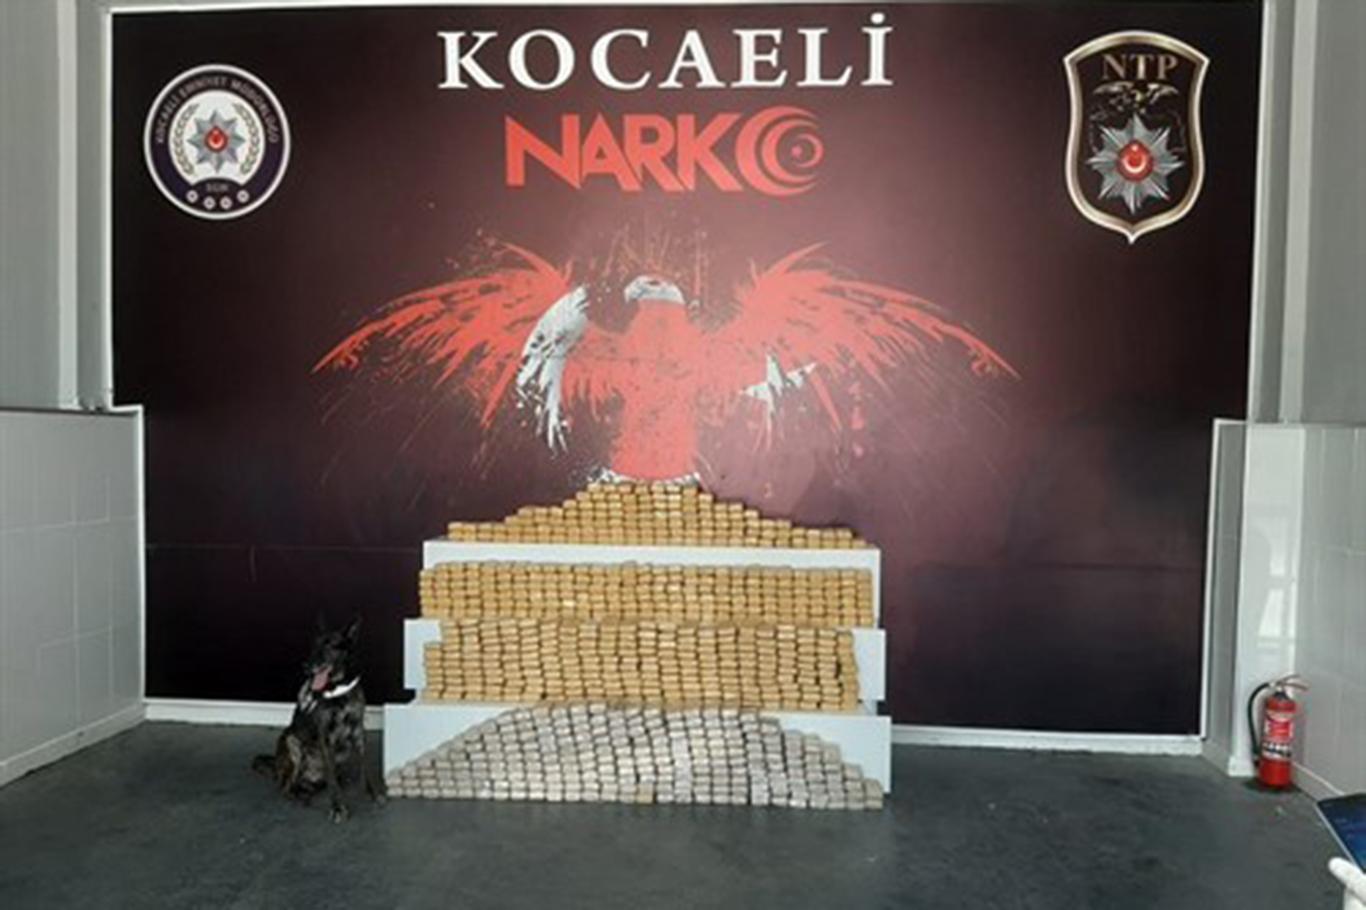 Kocaeli’nde temizlik ürünleri yüklü minibüste 375 kilogram eroin ele geçirildi